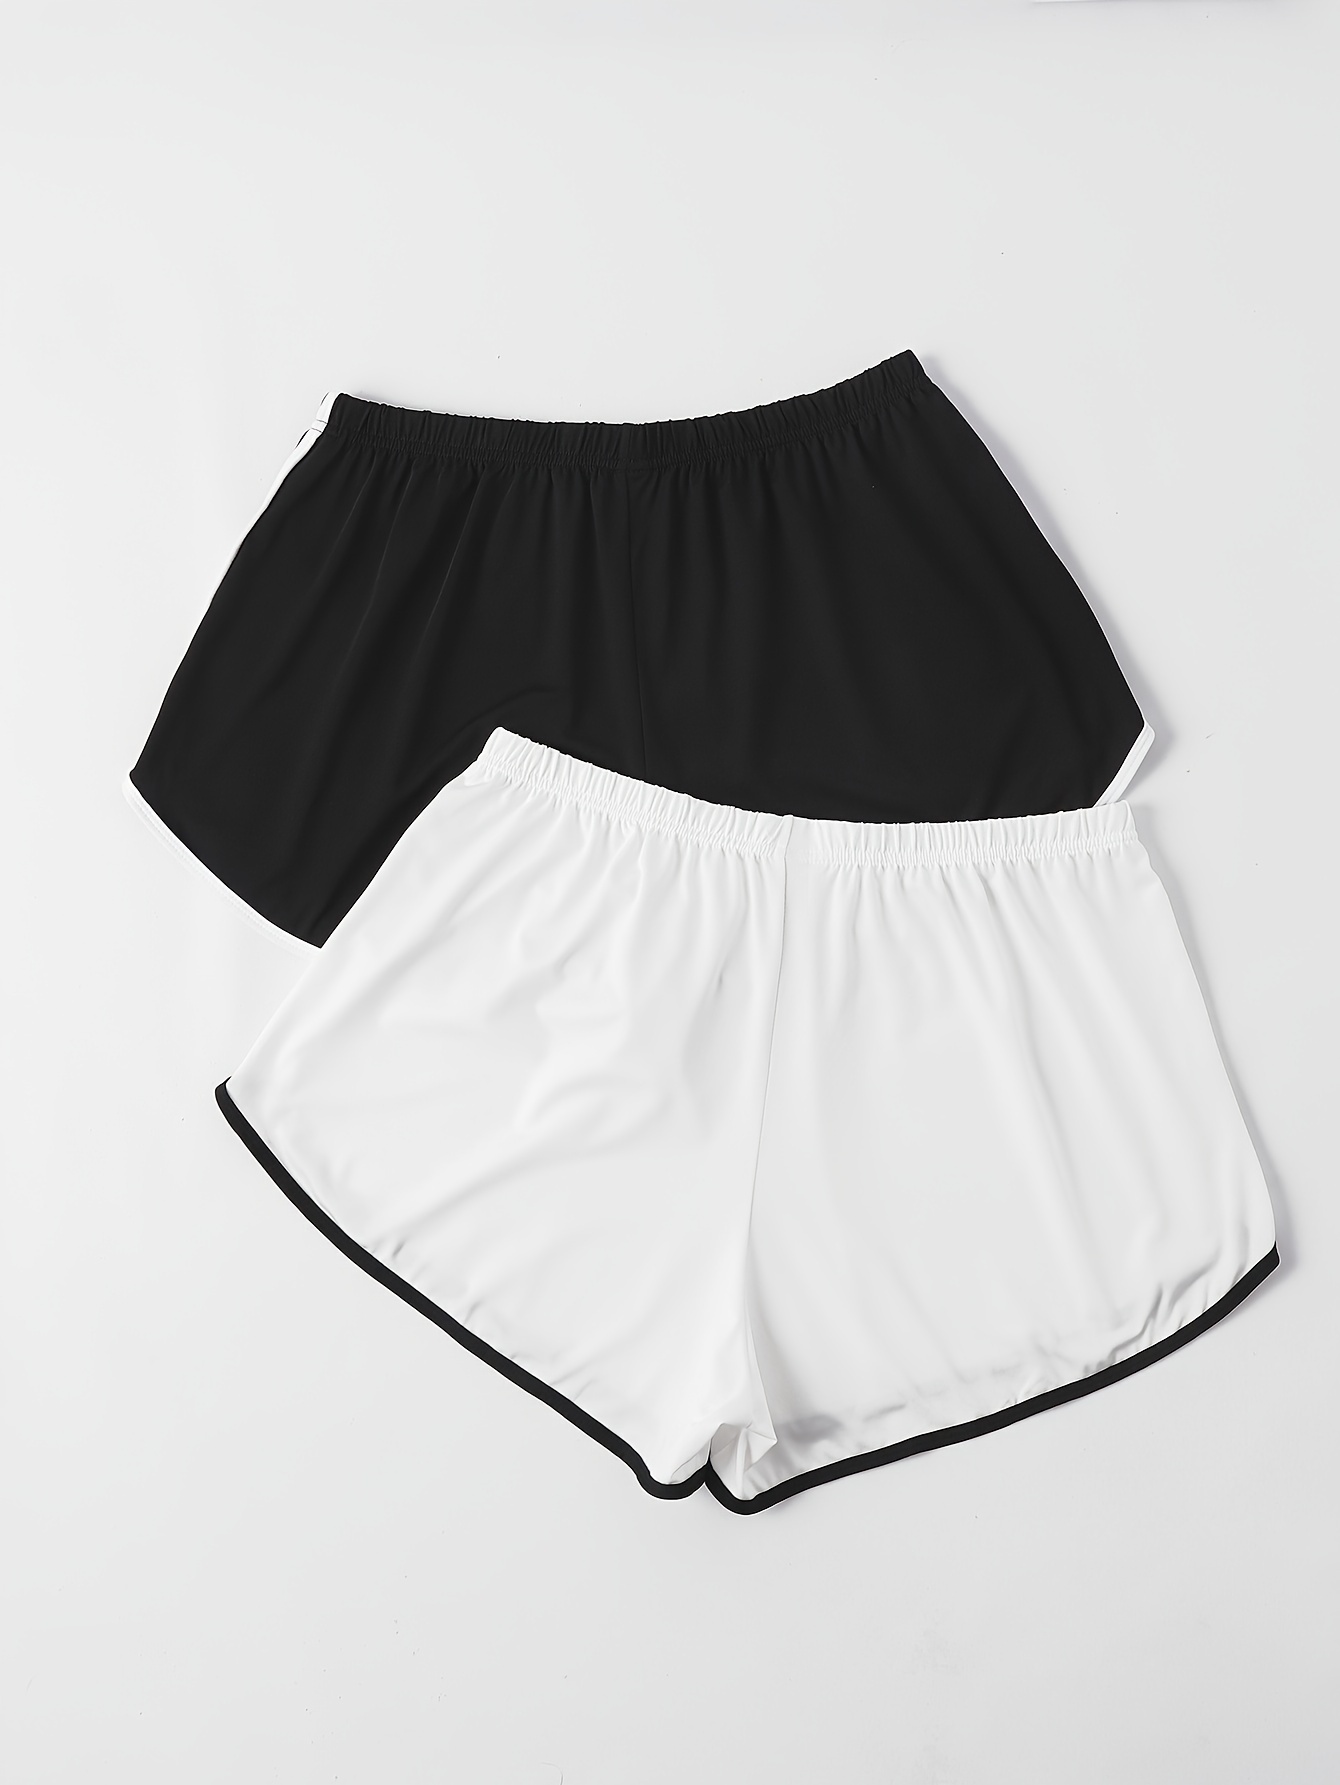 Plus Size Basic Pajama Shorts Set Women's Plus Elastic Waist